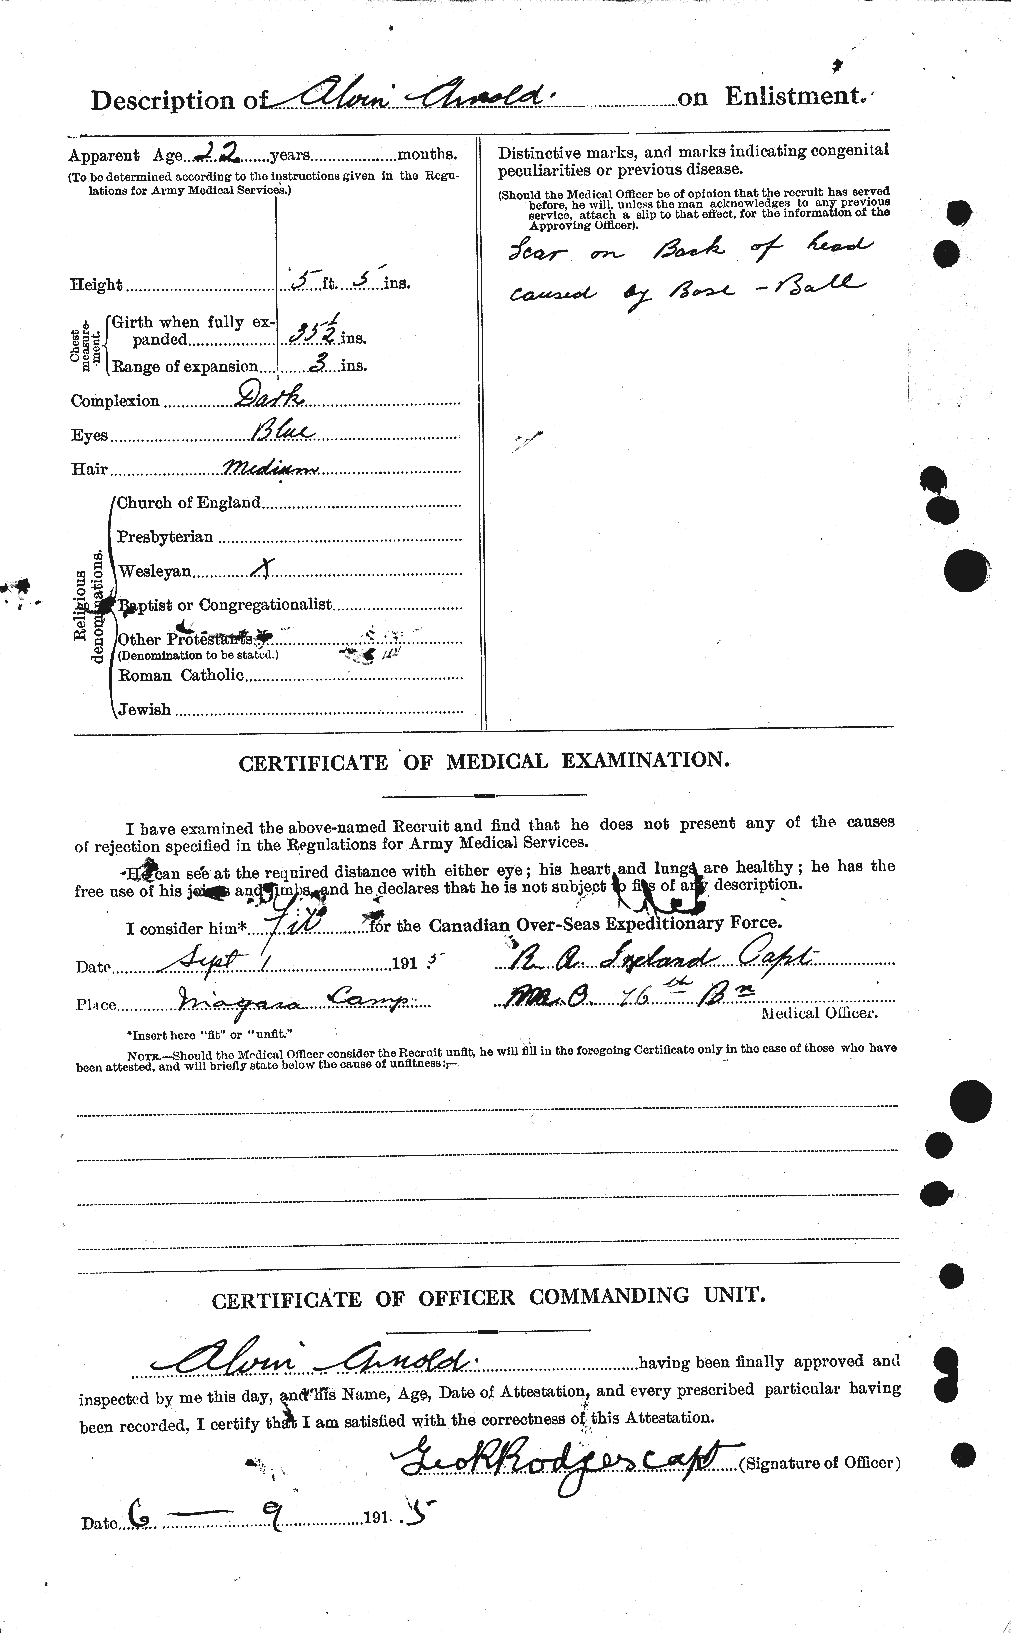 Dossiers du Personnel de la Première Guerre mondiale - CEC 213177b